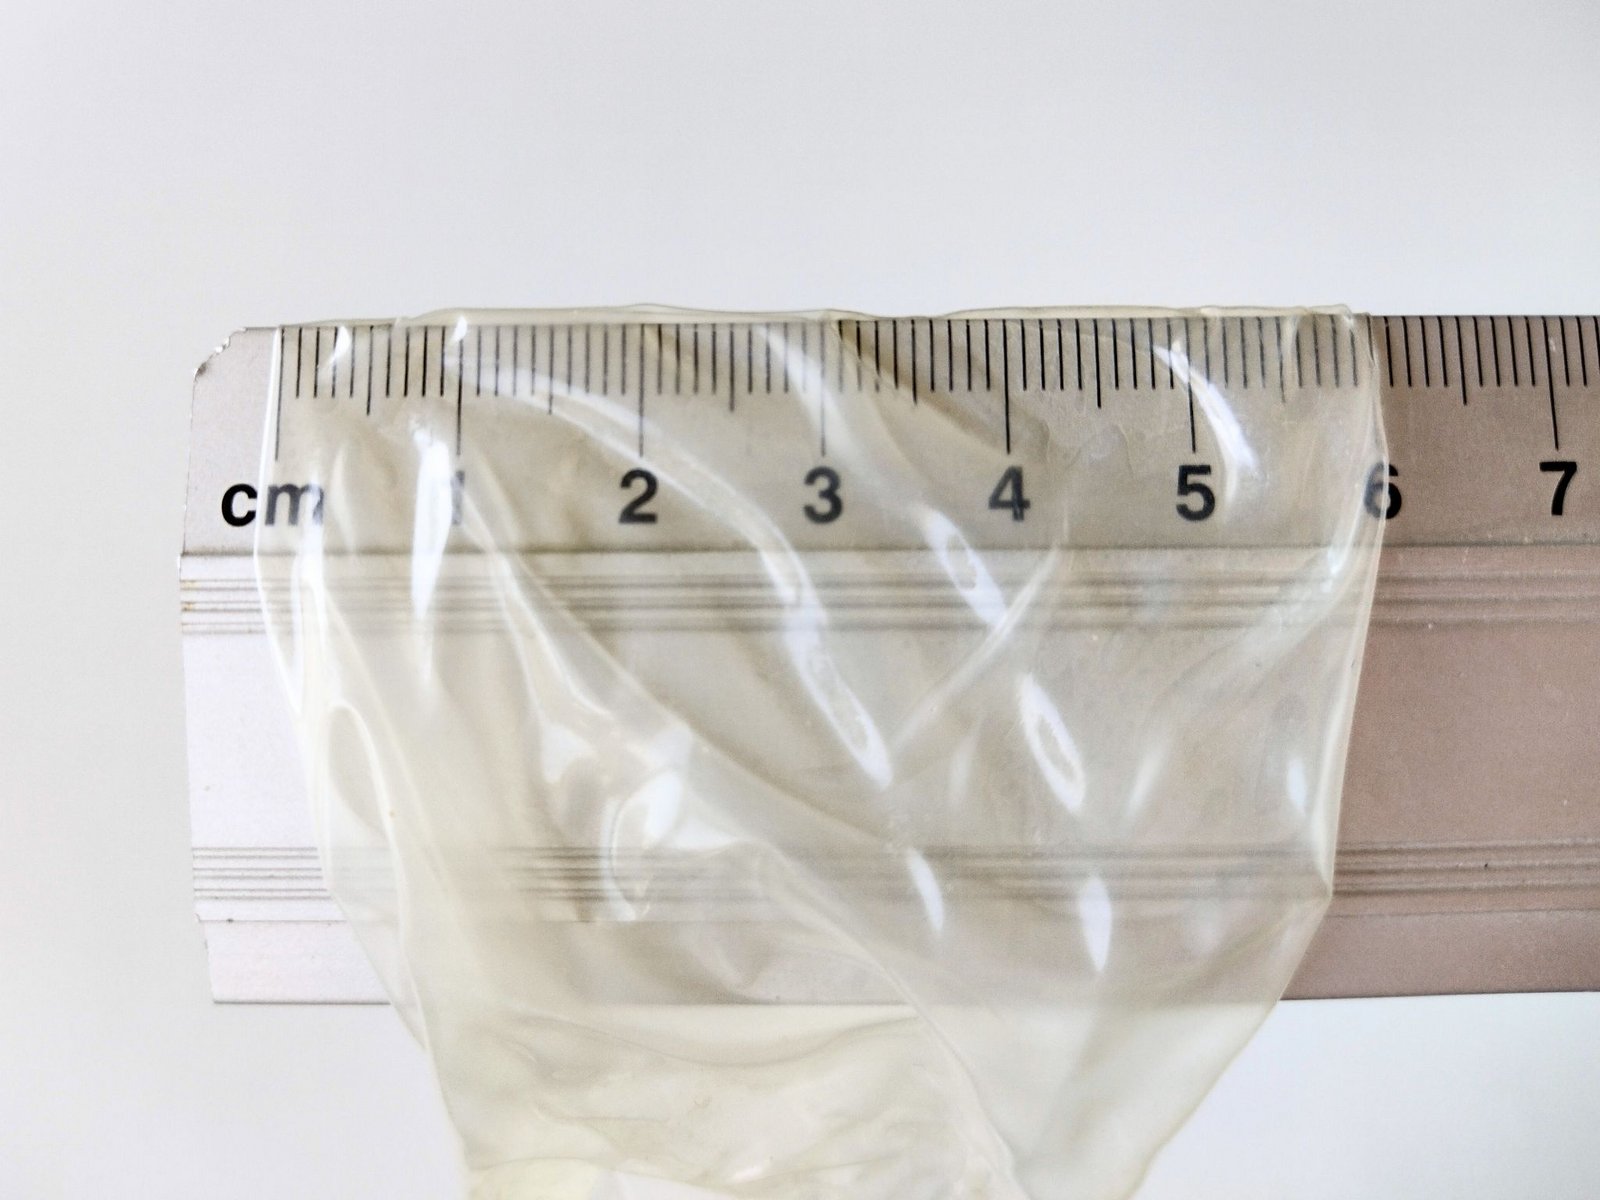 Nominale breedte van een condoom gemeten met een liniaal